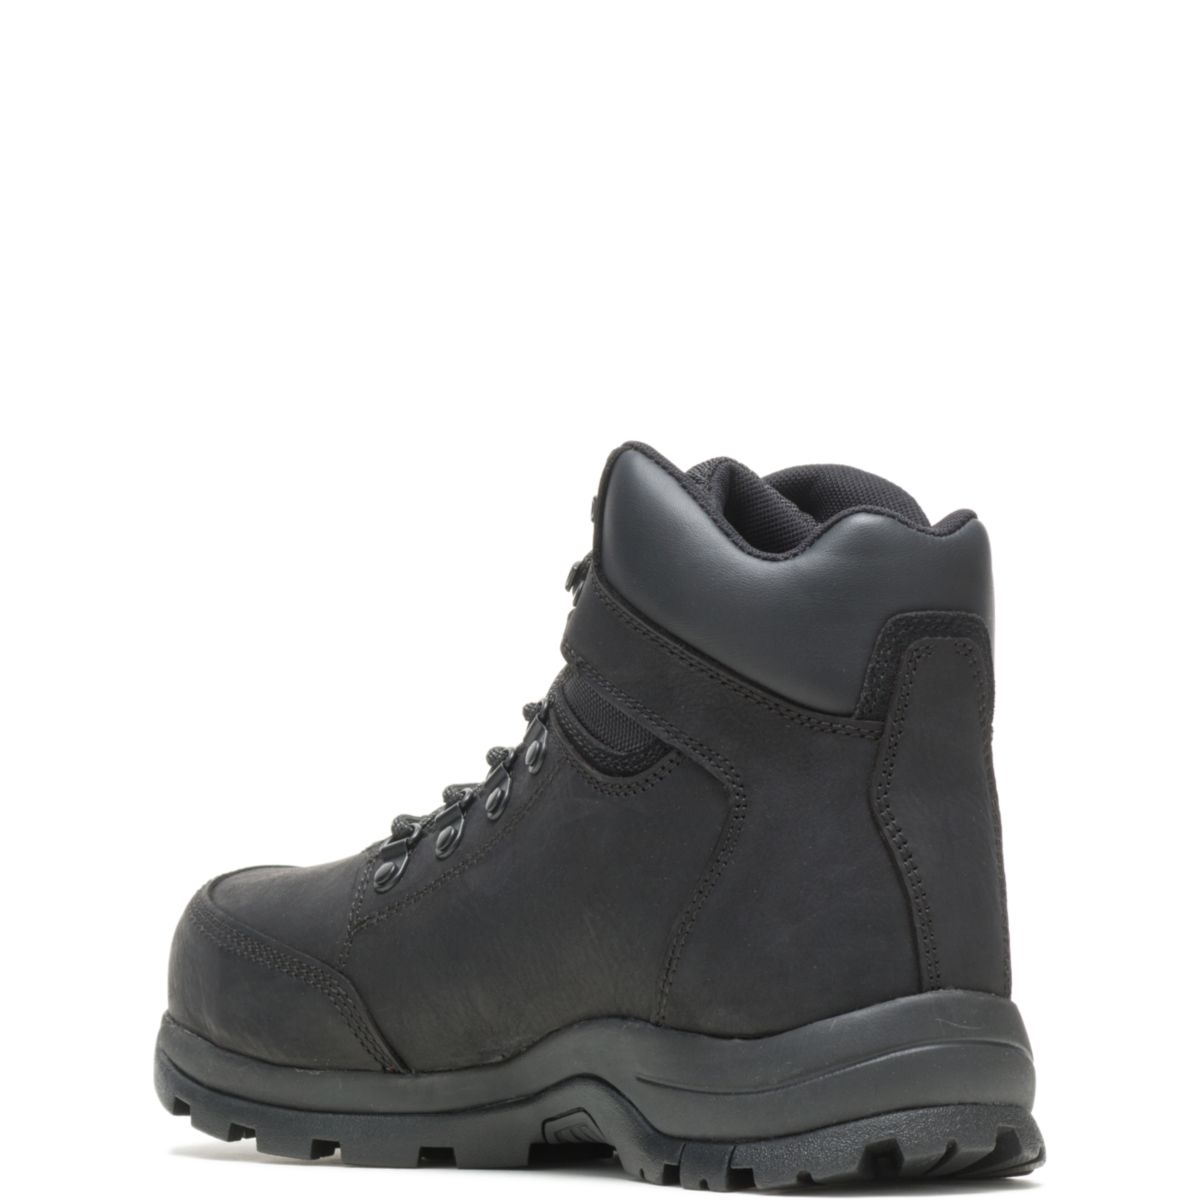 WOLVERINE Men's Grayson Steel Toe Waterproof Work Boot Black - W211042 BLACK - BLACK, 11